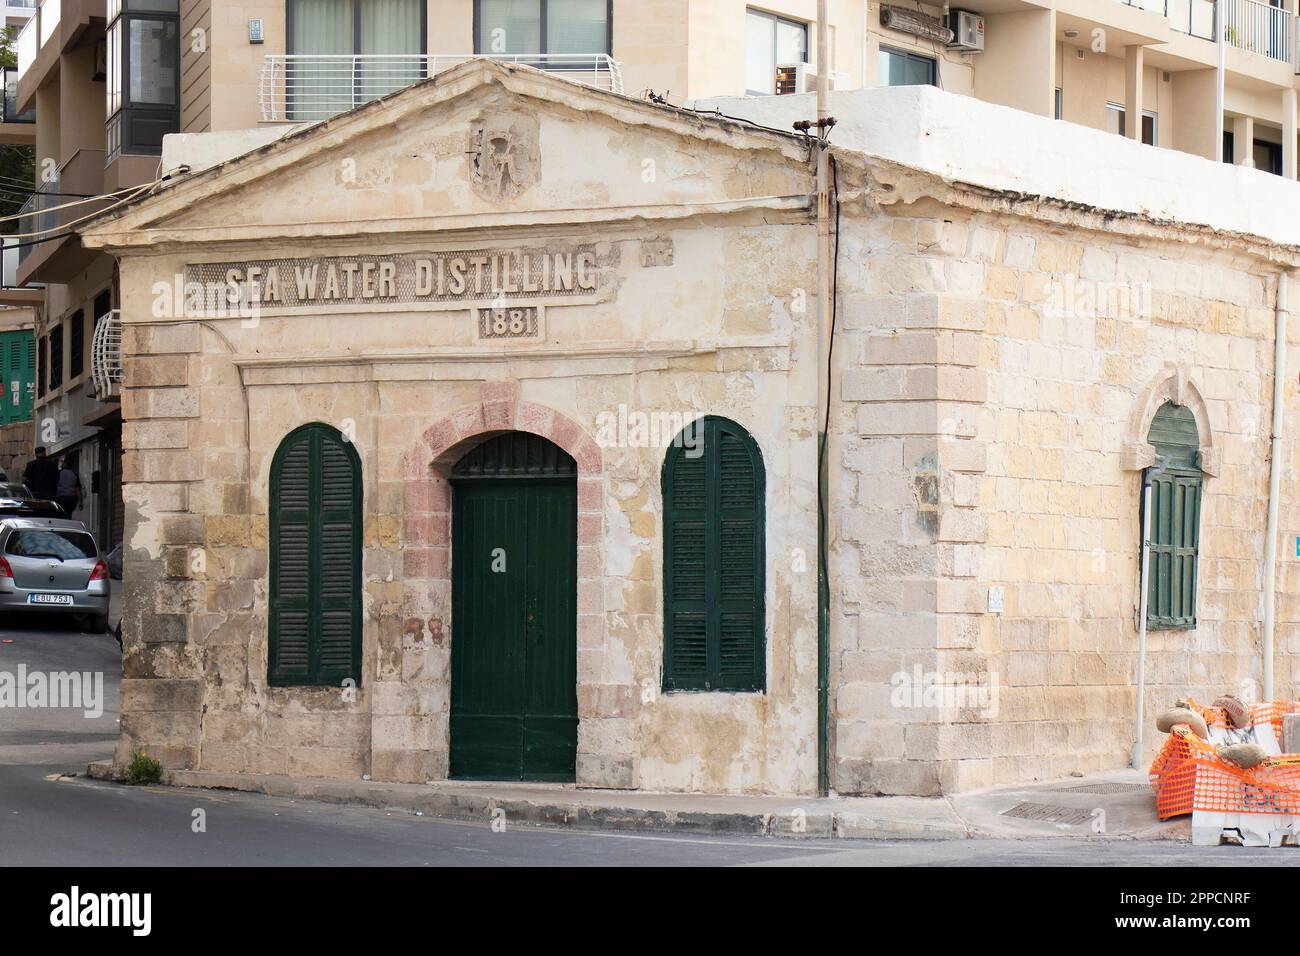 Sliema, Malte - 12 novembre 2022 : usine de désinfection de l'eau de mer, construite à Sliema en 1881 pour fournir de l'eau potable Banque D'Images